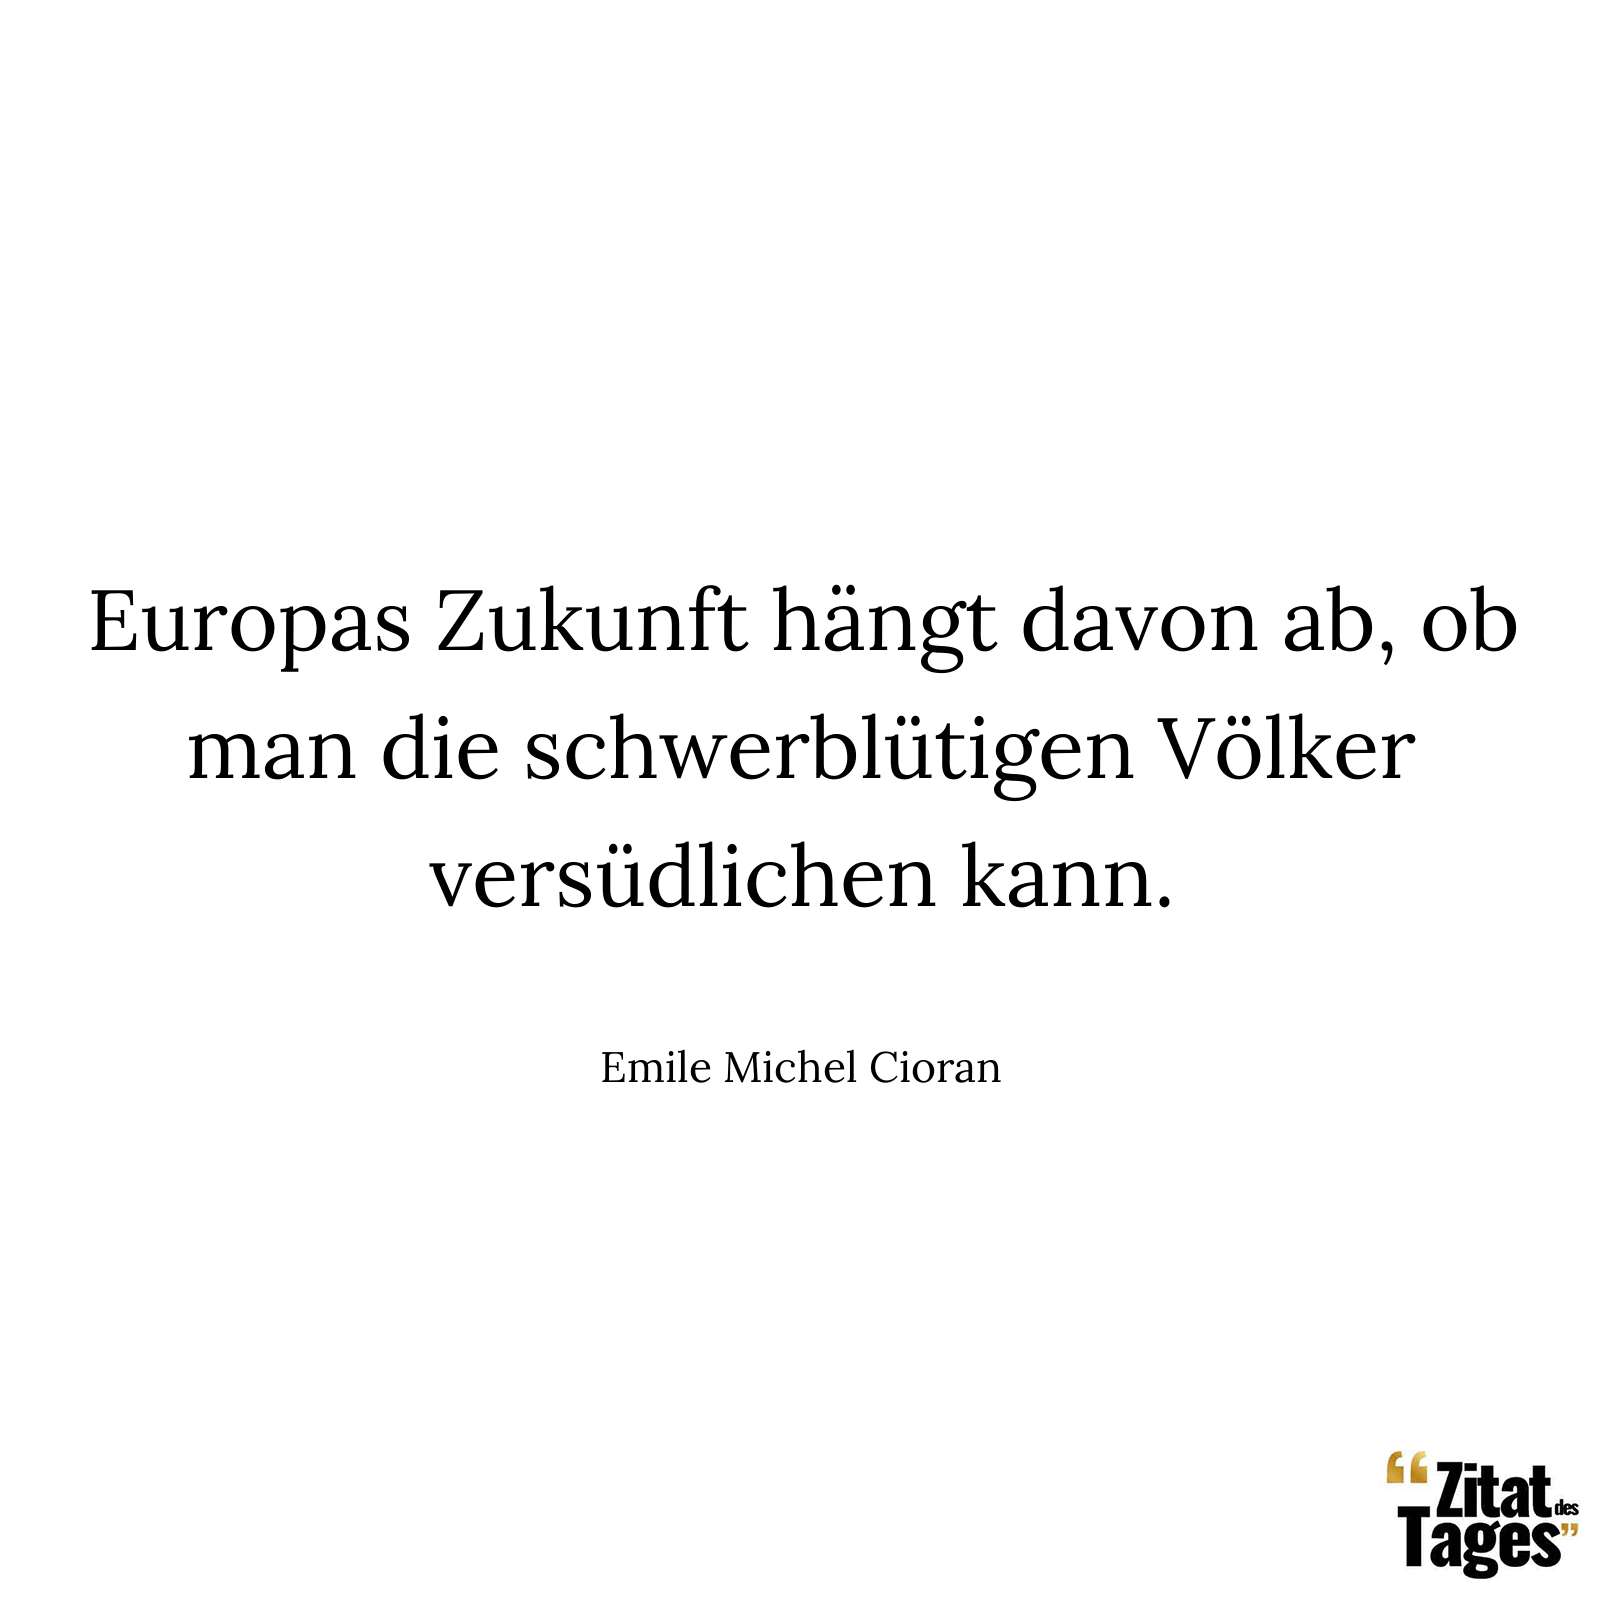 Europas Zukunft hängt davon ab, ob man die schwerblütigen Völker versüdlichen kann. - Emile Michel Cioran